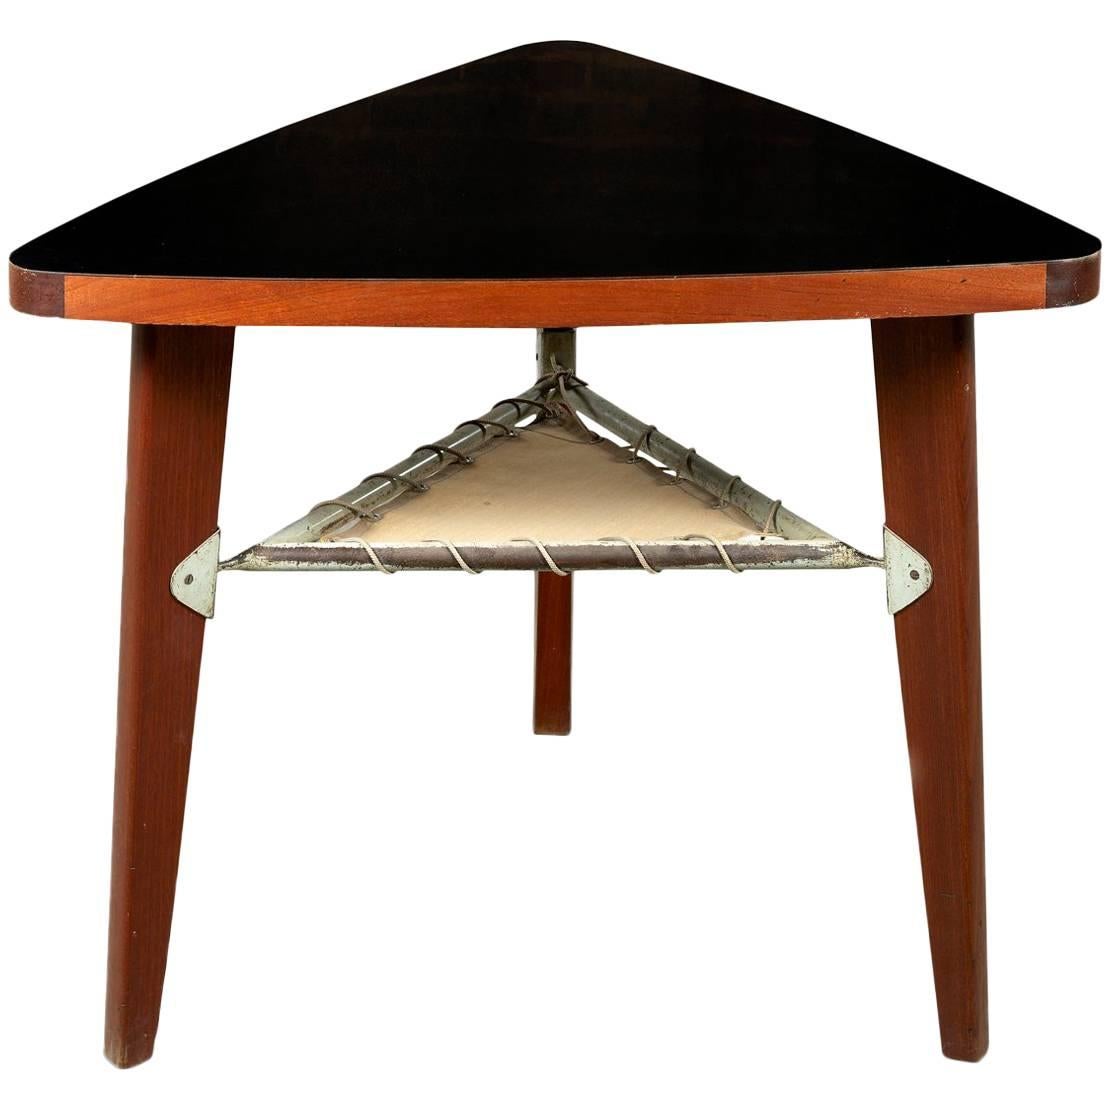 Pierre Jeanneret Pedestal Table, 1950